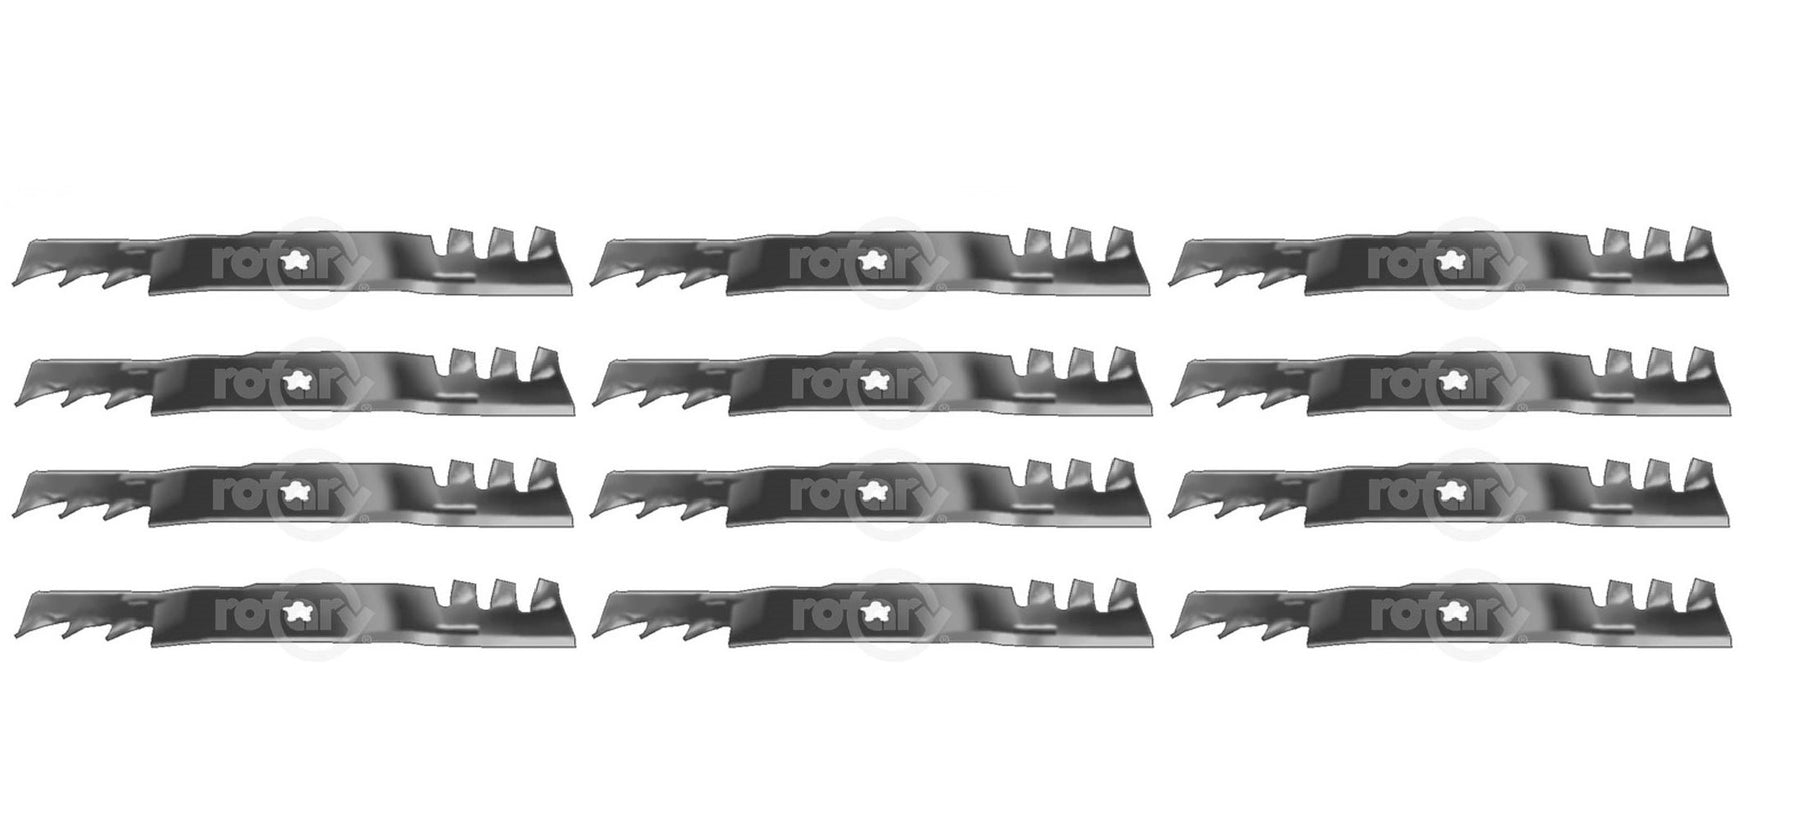 12 Pack Blades Fits Husqvarna 532173921